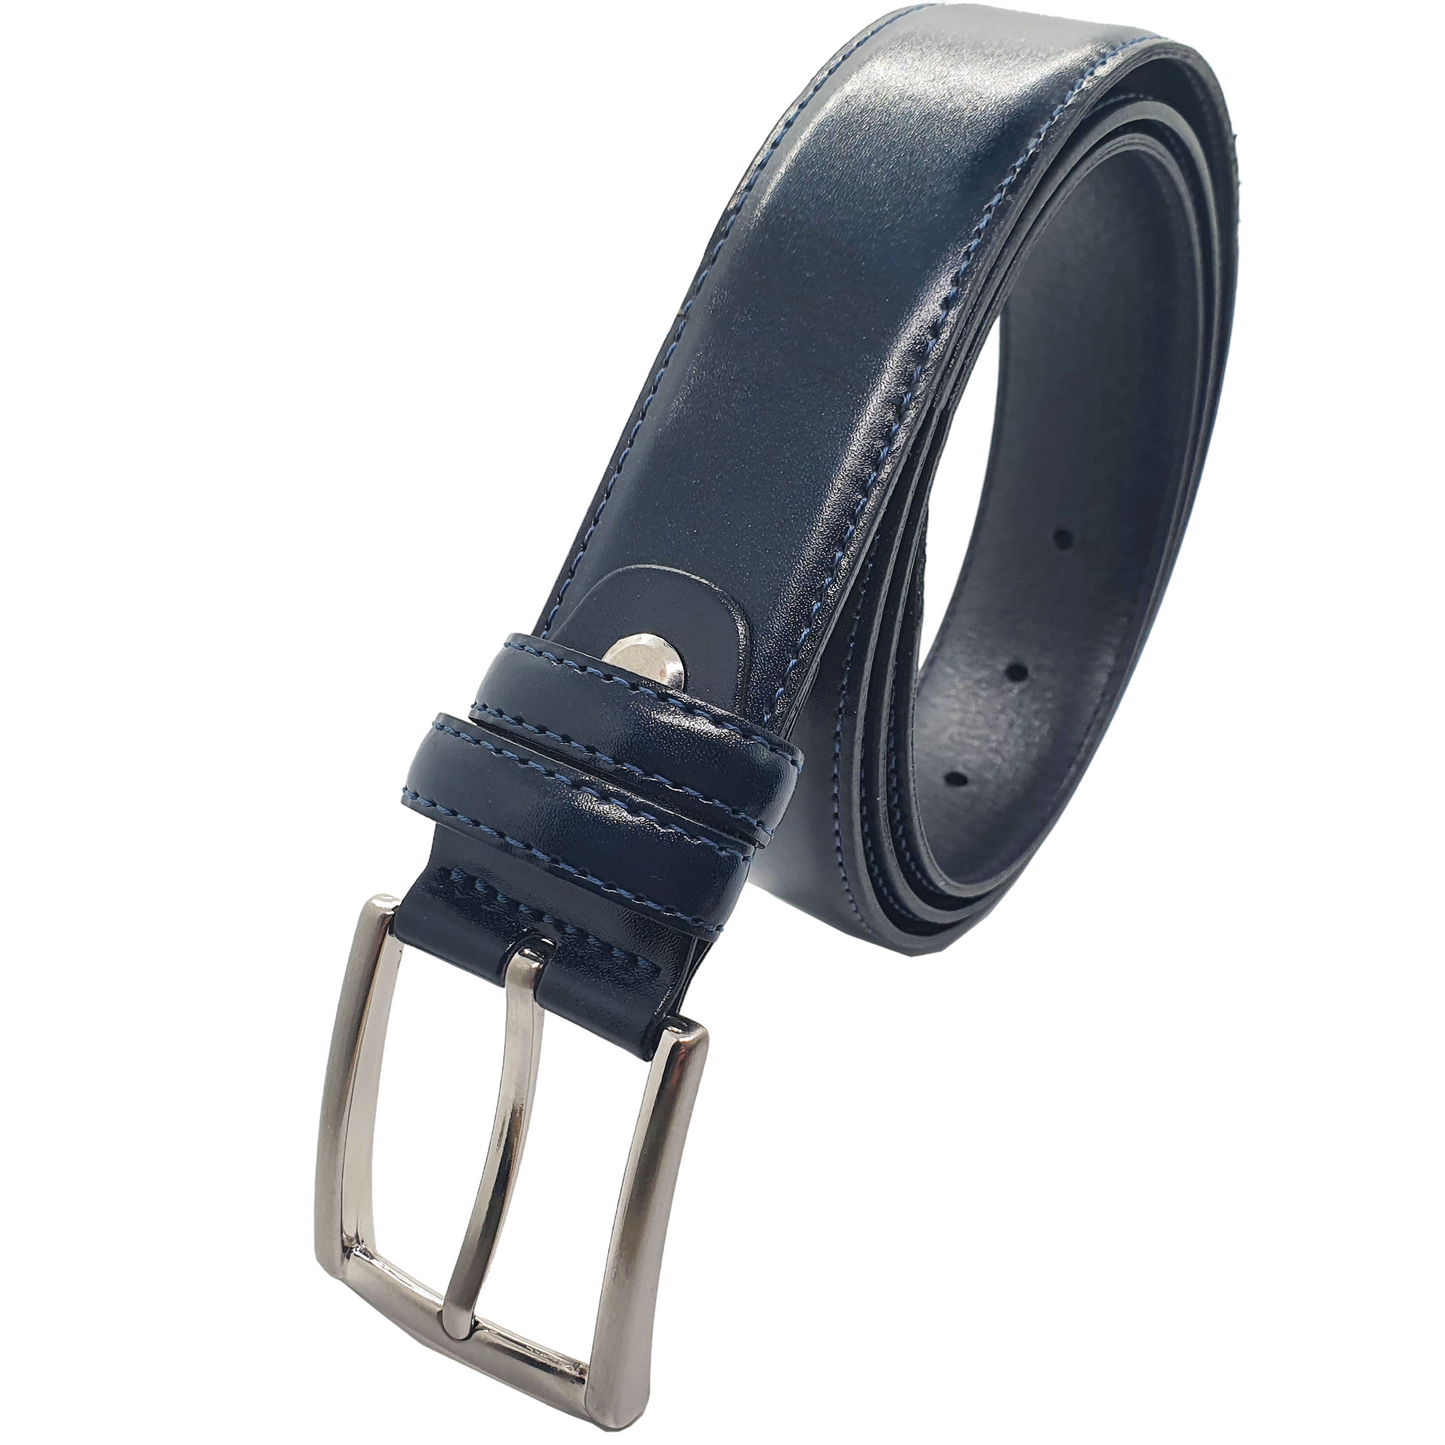 Safekeepers Men's Belt - Men's Belt - Belt Leather - leather belt - Stitched - Black